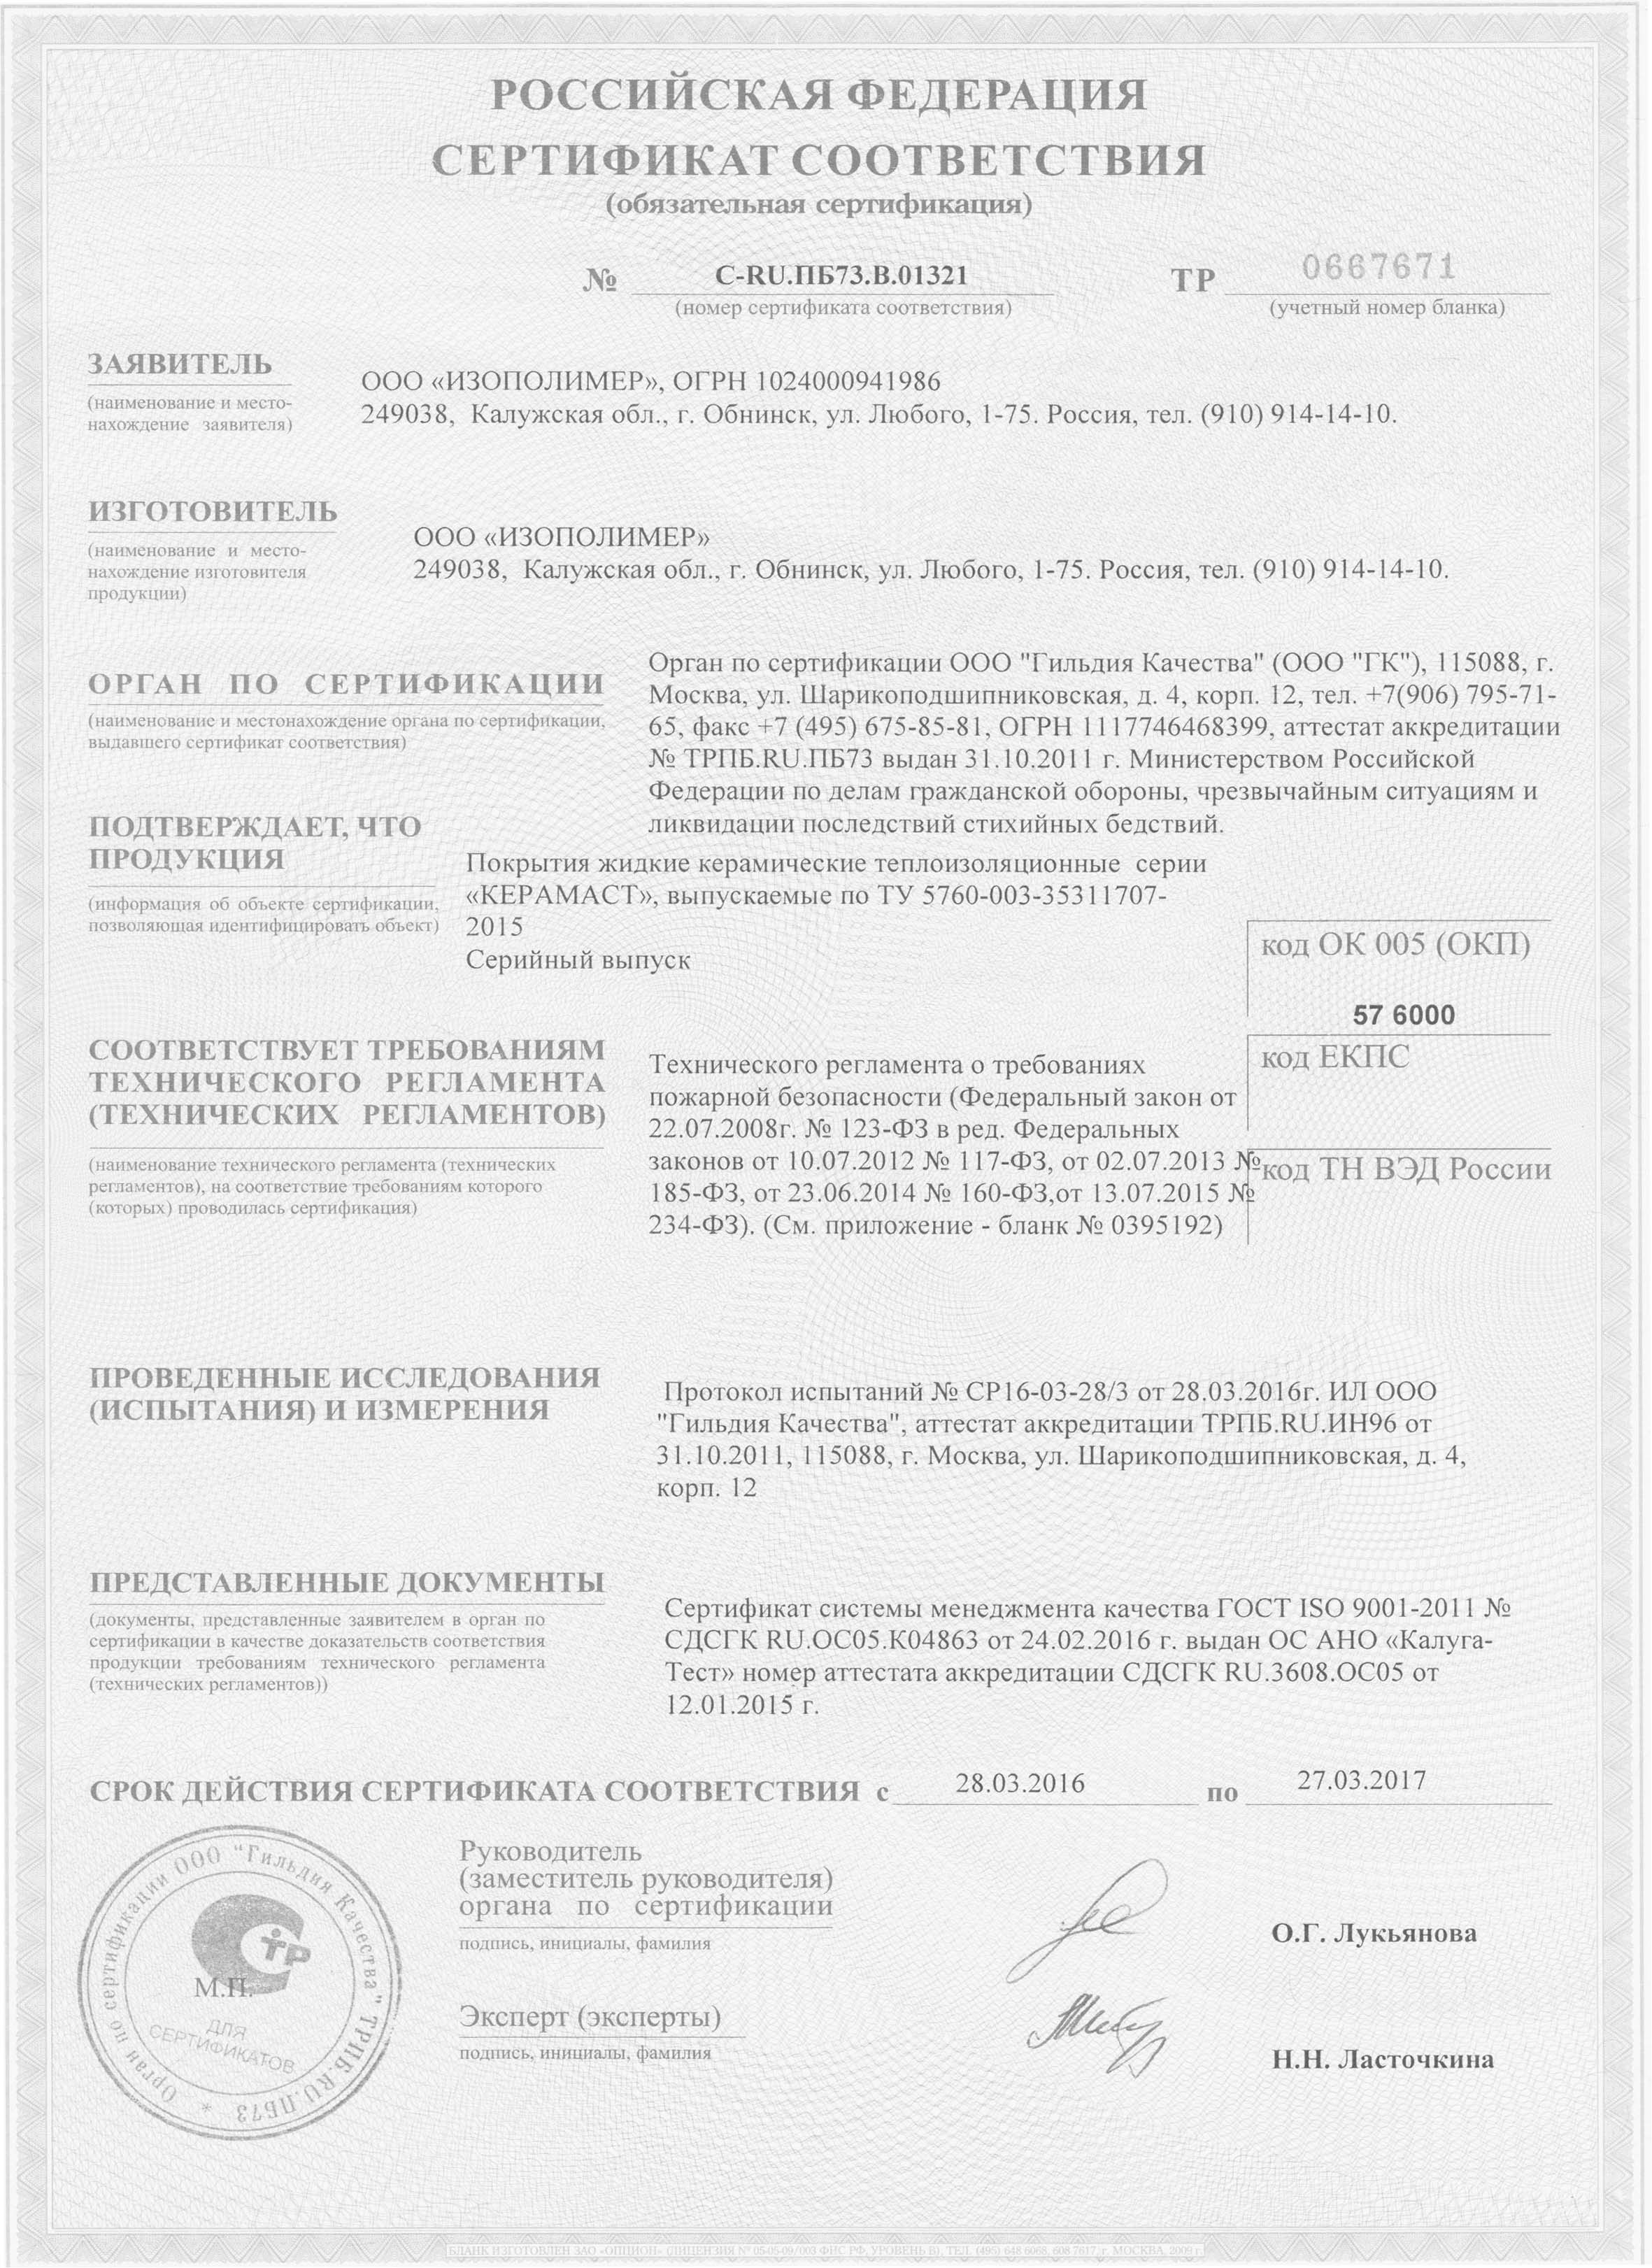 Сертификат пожарного соответствия